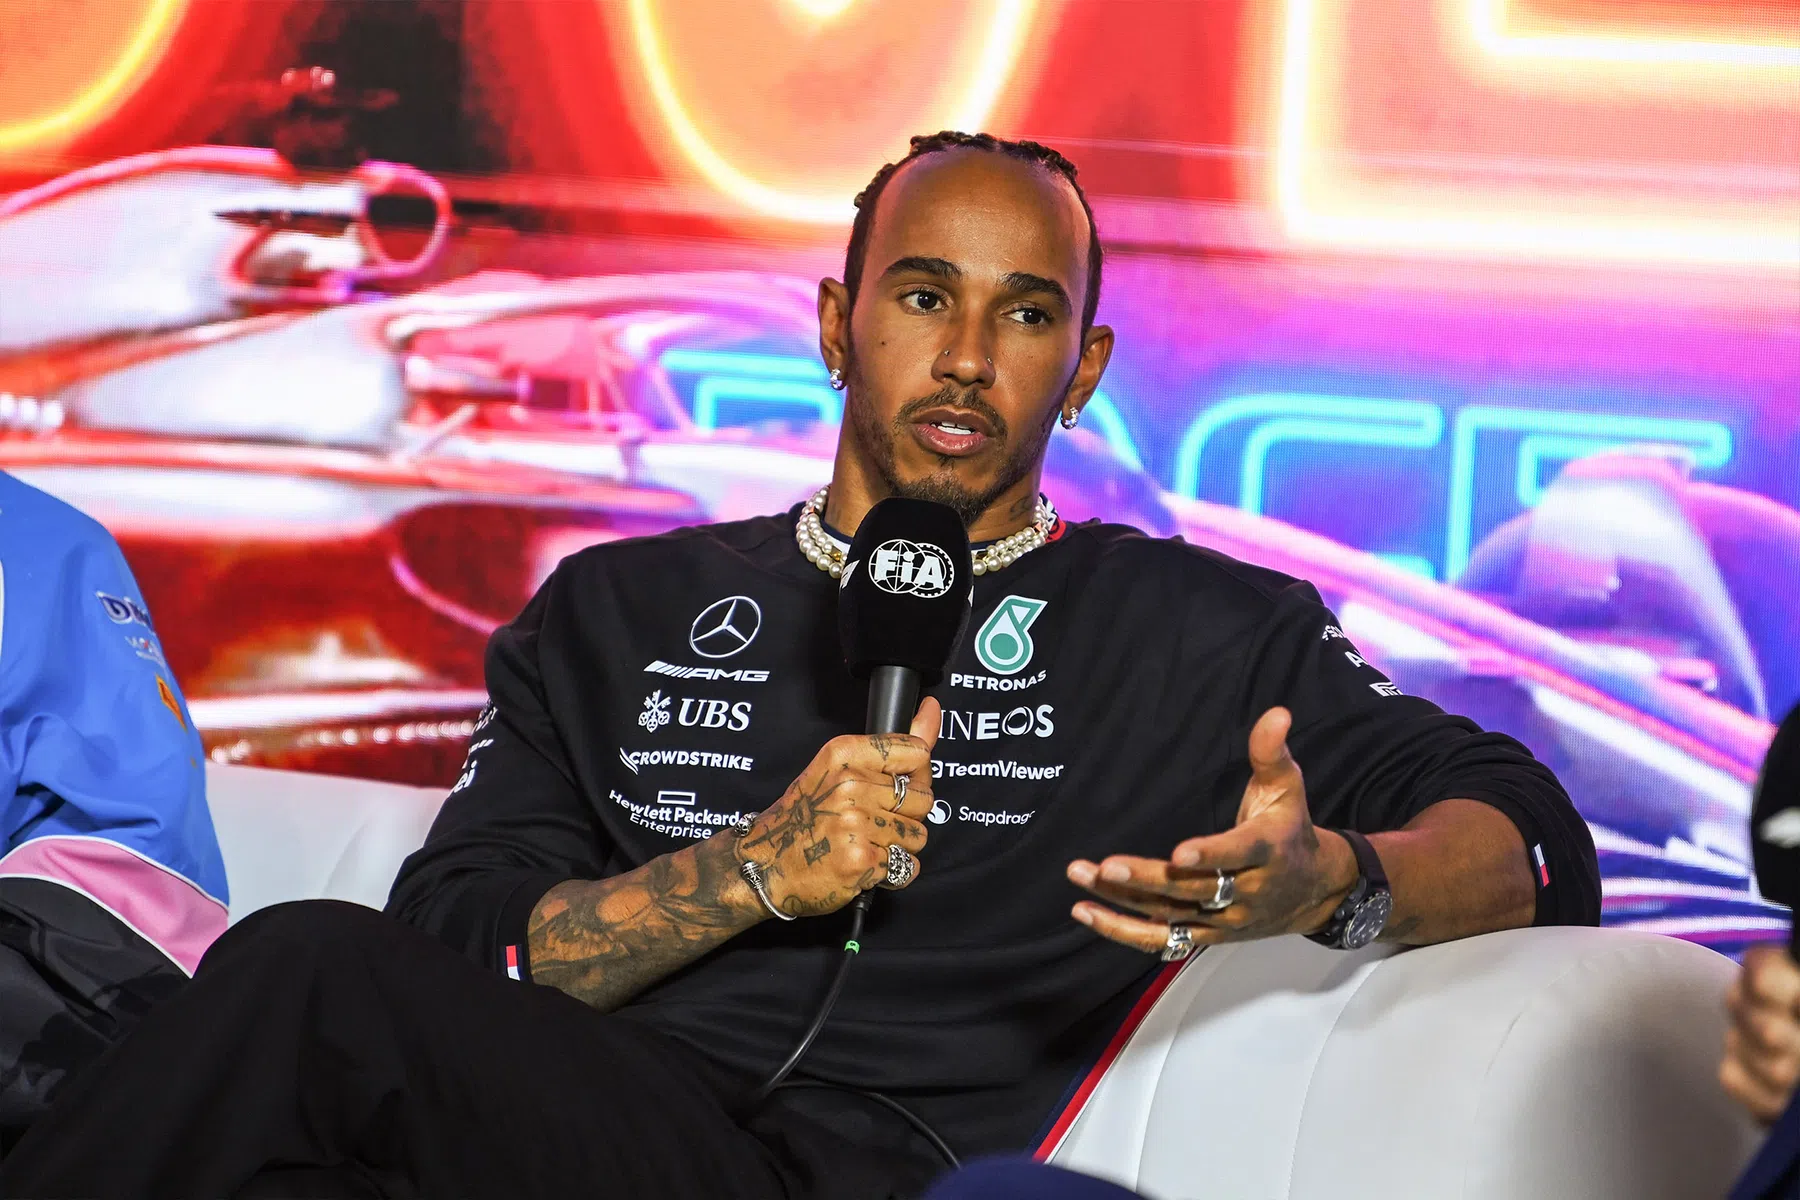 Lewis Hamilton parla della sua visione della F1, delle speranze per la gara in Africa